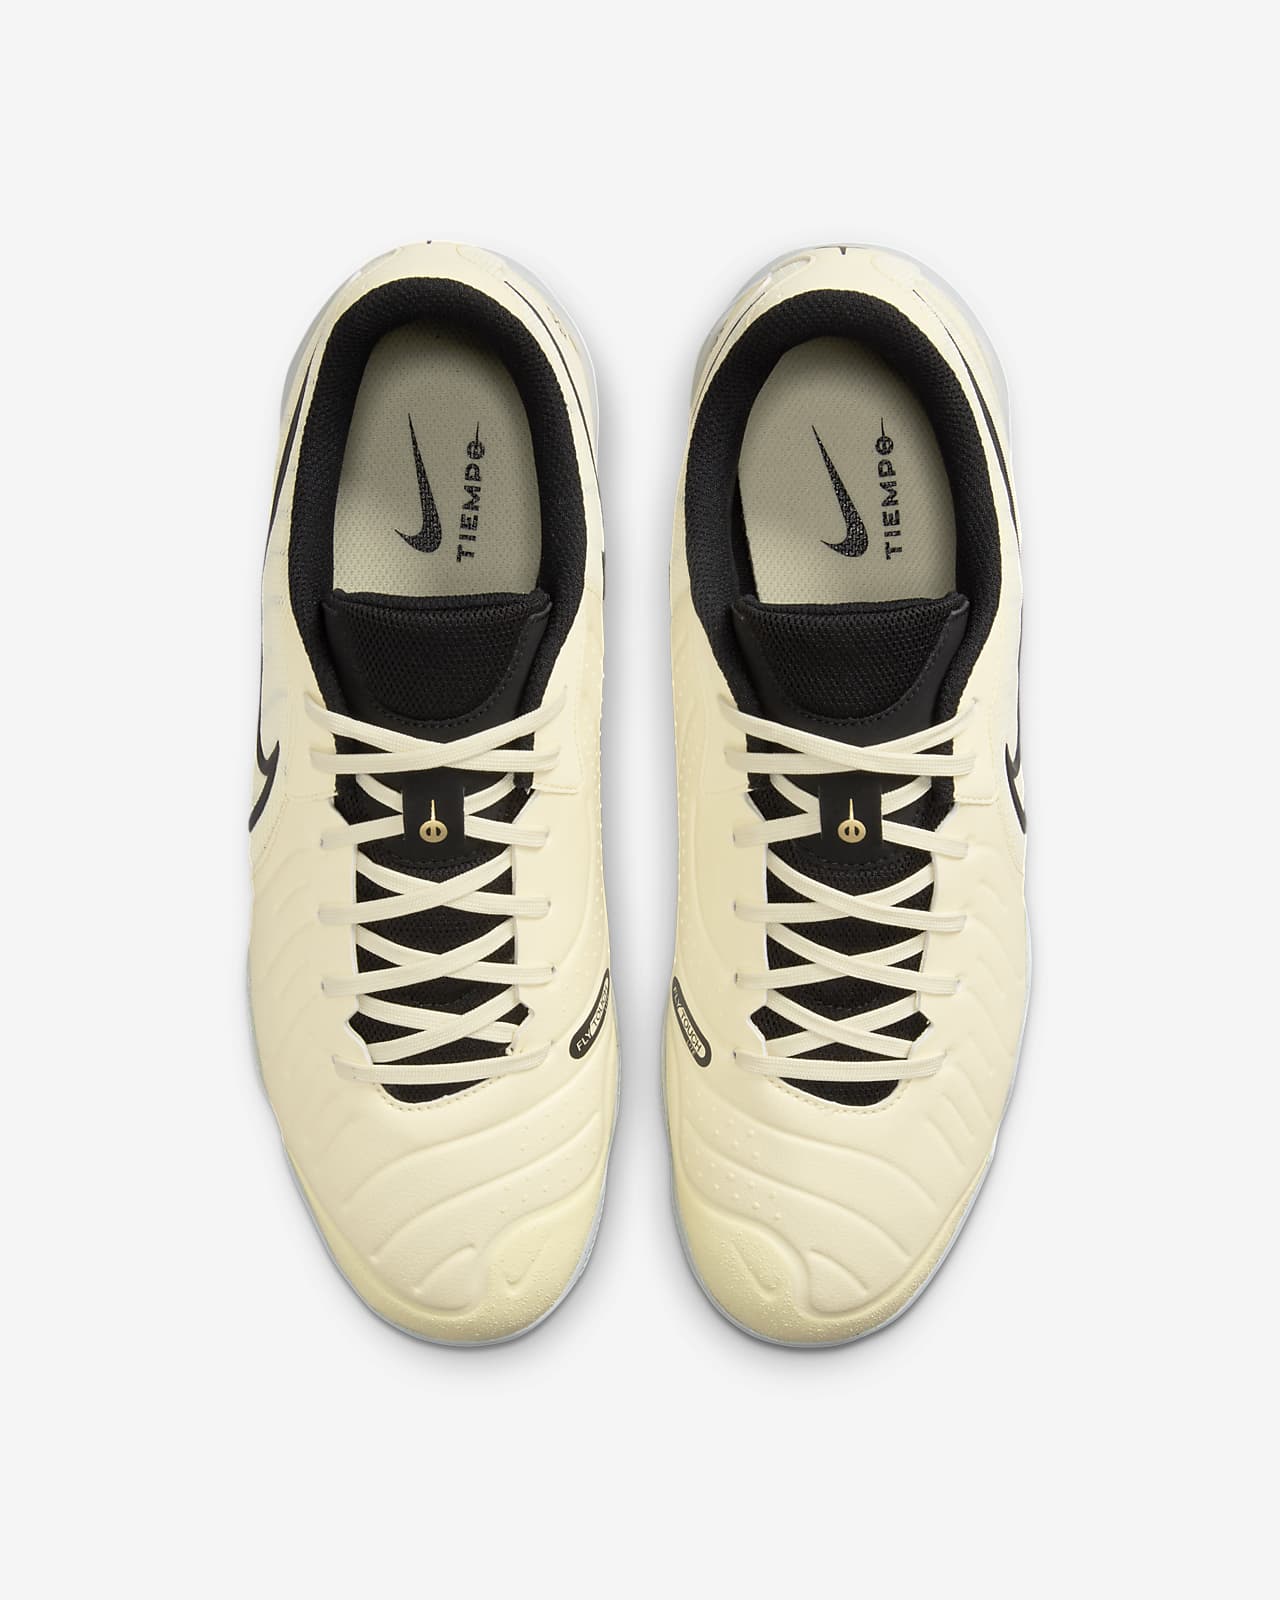 Academy Soccer Indoor/Court Shoes. 10 Legend Nike Tiempo Low-Top